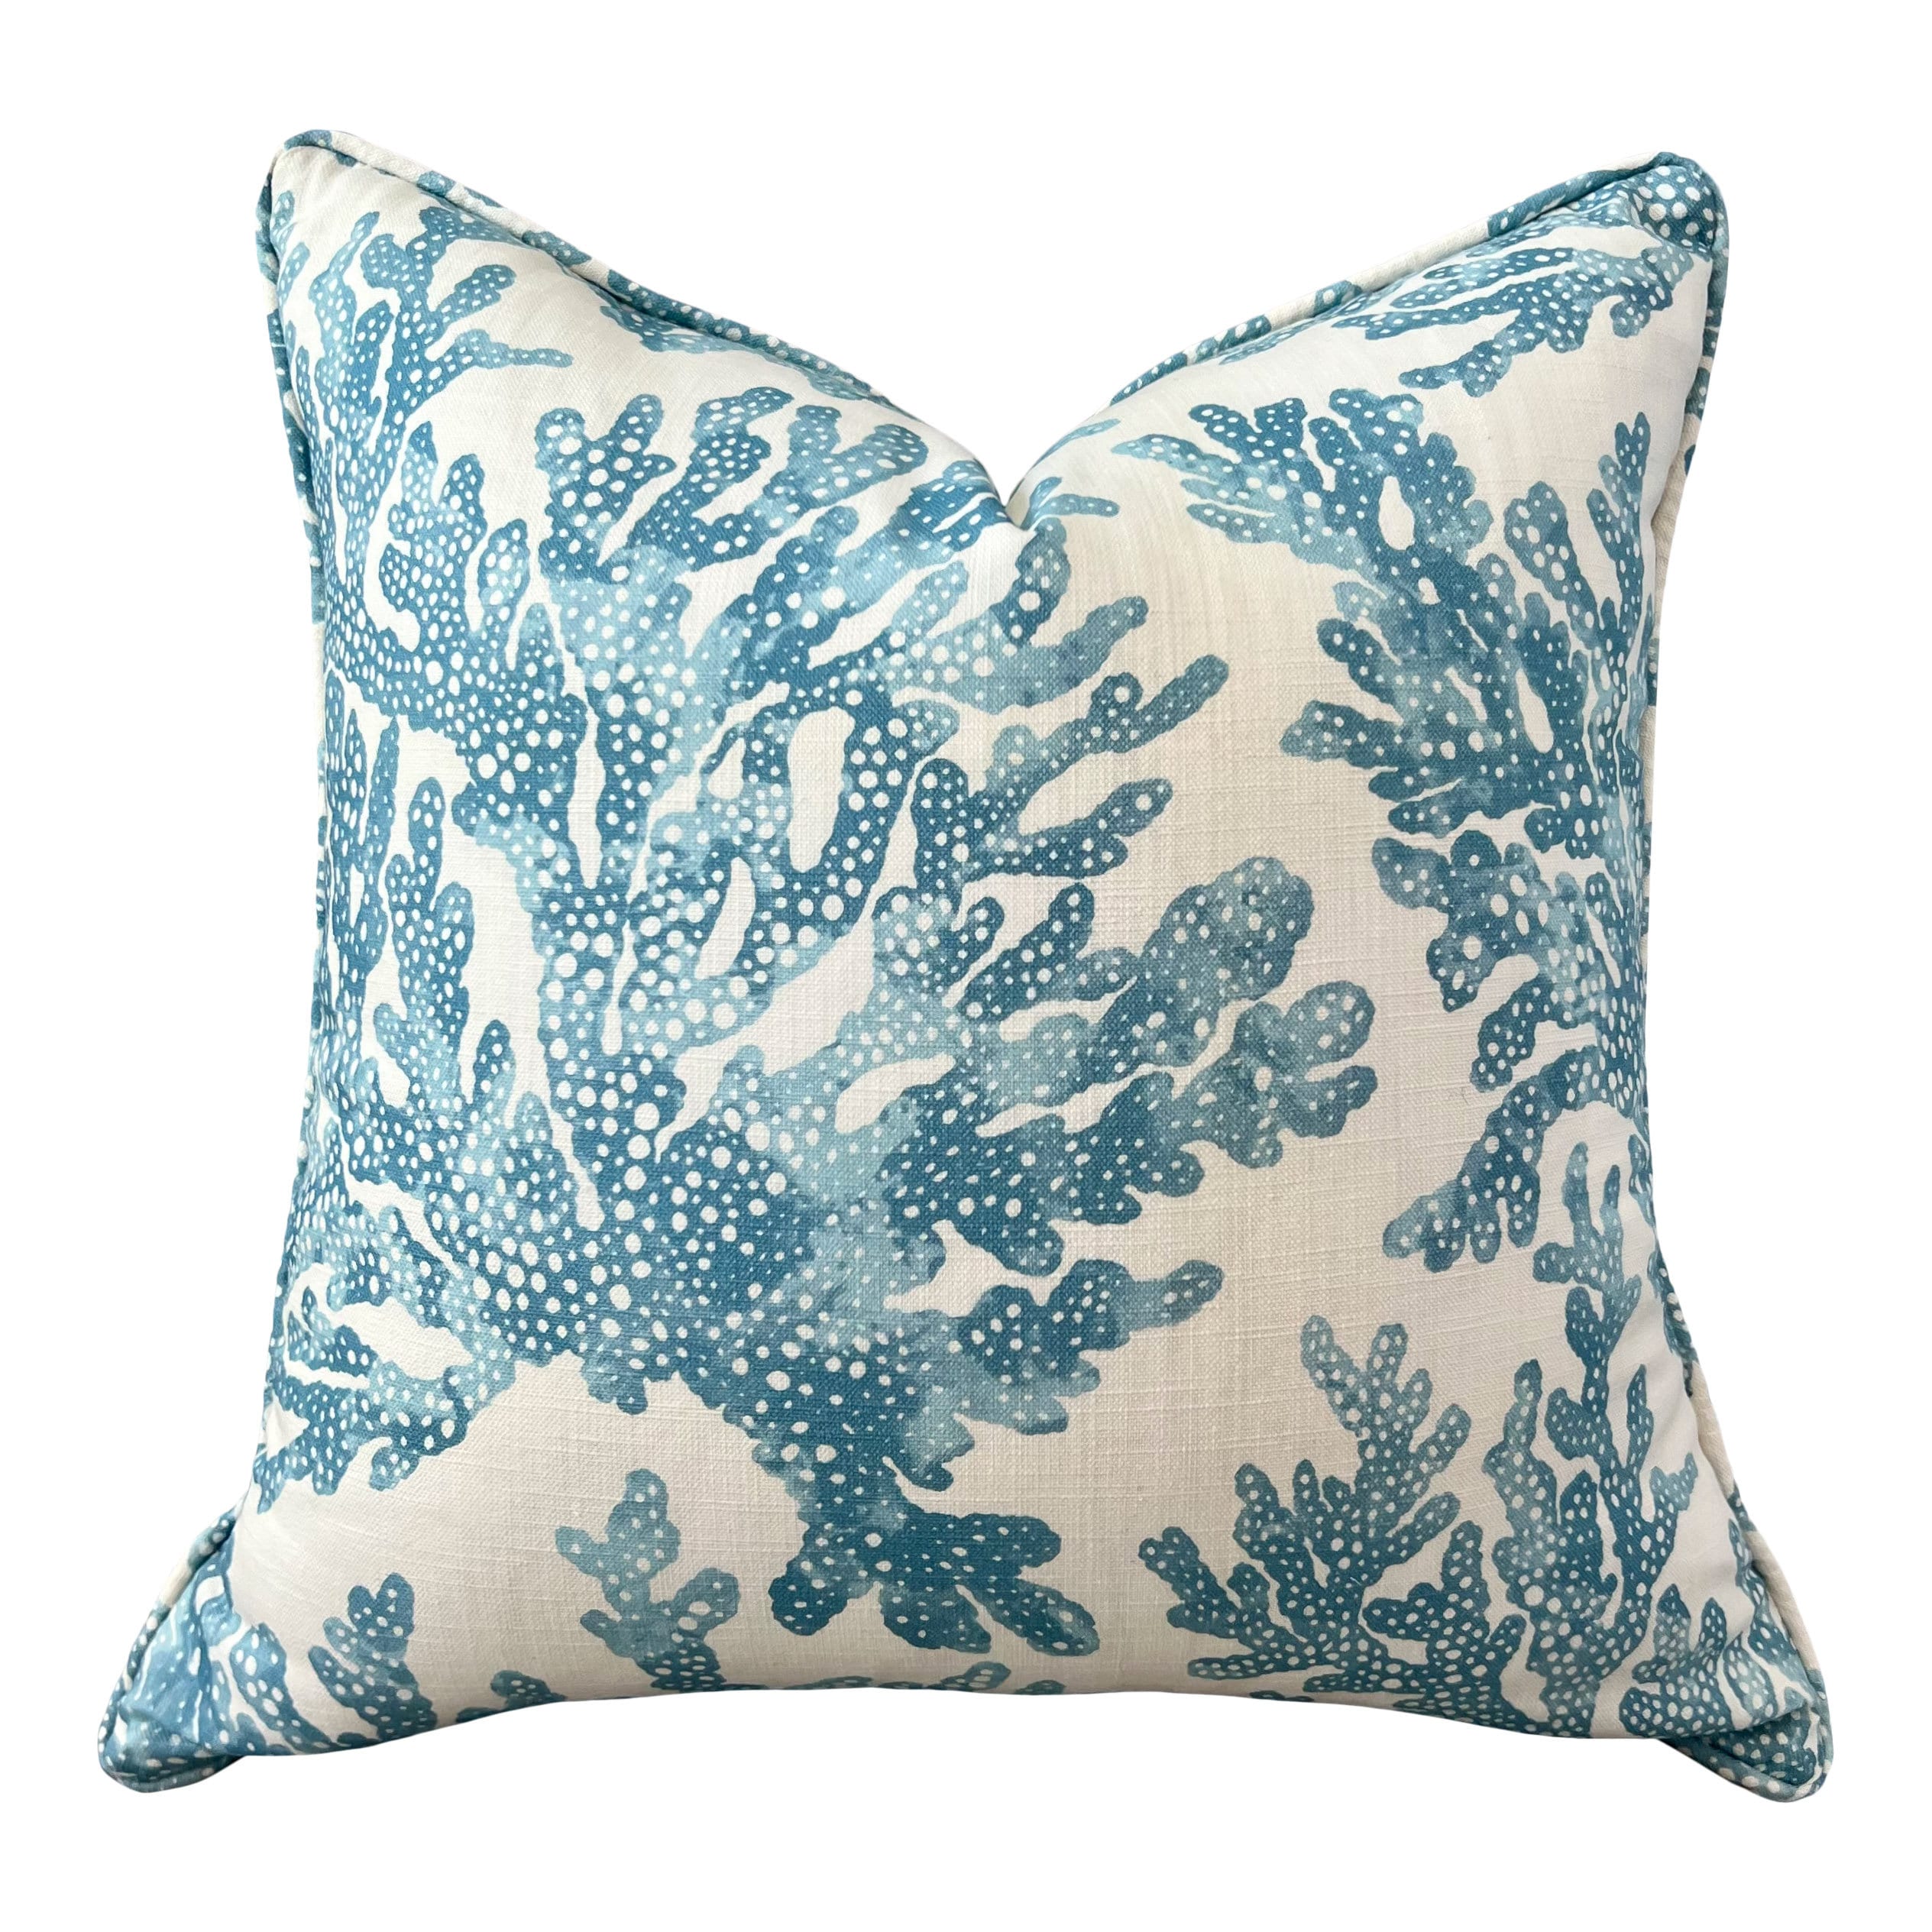 Thibaut Marine Coral Pillow Cover in Blue. Lumbar Coastal Pillow, Designer Beach House Pillow, Tropical Accent Pillow, Lumbar Throw Pillow